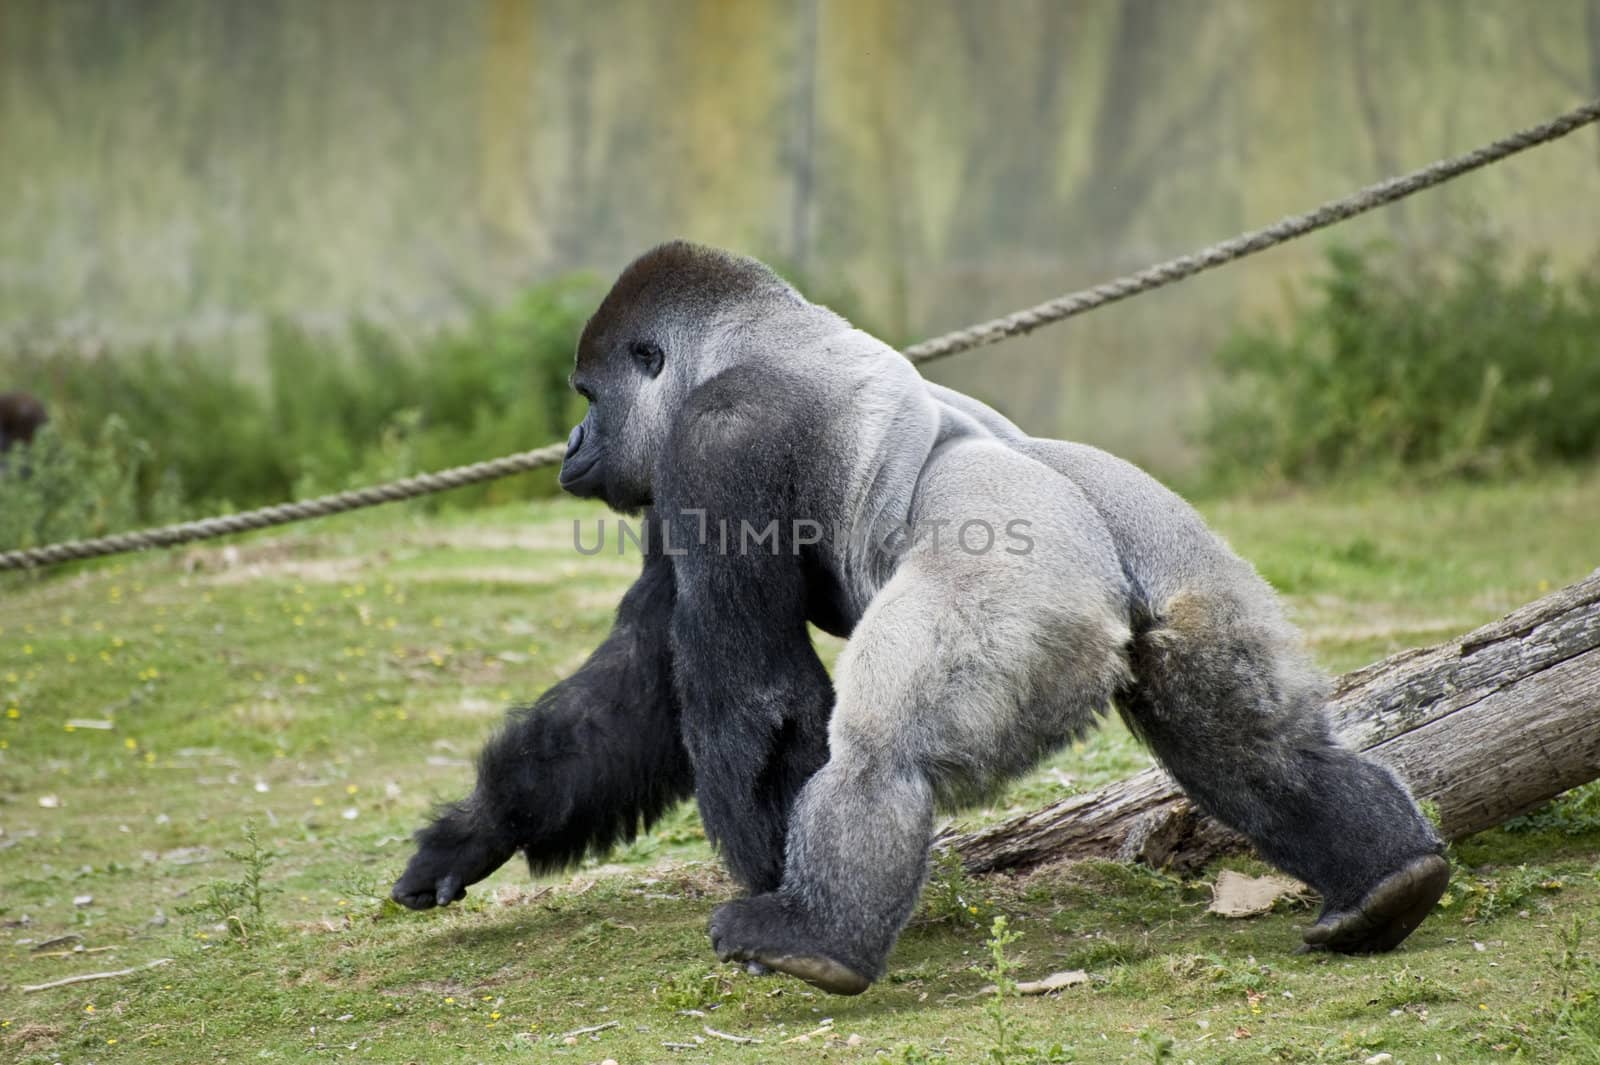 Silverback western lowlands gorilla by Veneratio